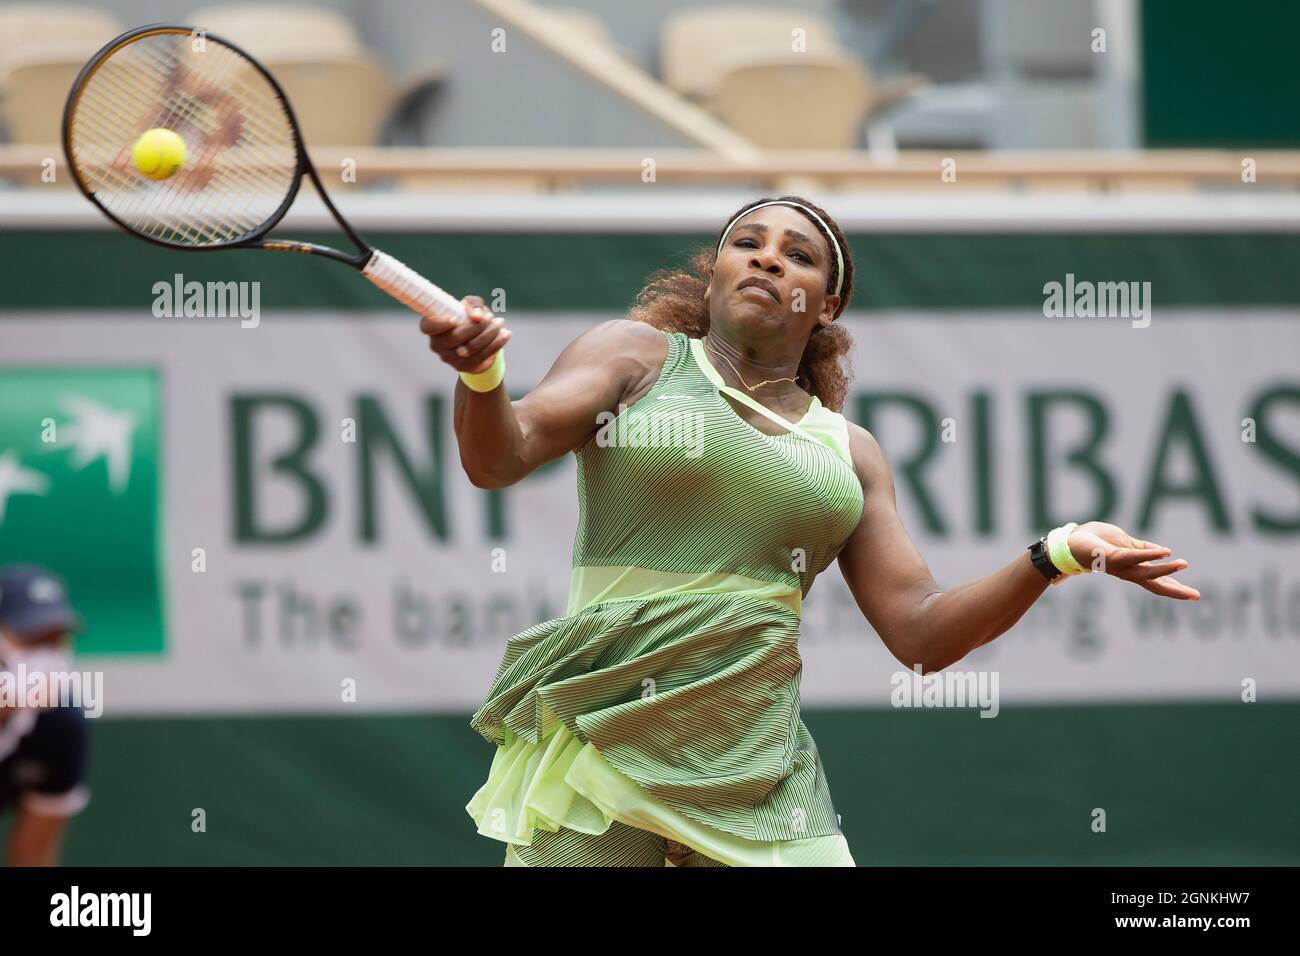 IL tennista STATUNITENSE Serena Williams (USA) sta giocando un calcio d'inizio, torneo di tennis del French Open 2021, Parigi, Francia. Foto Stock